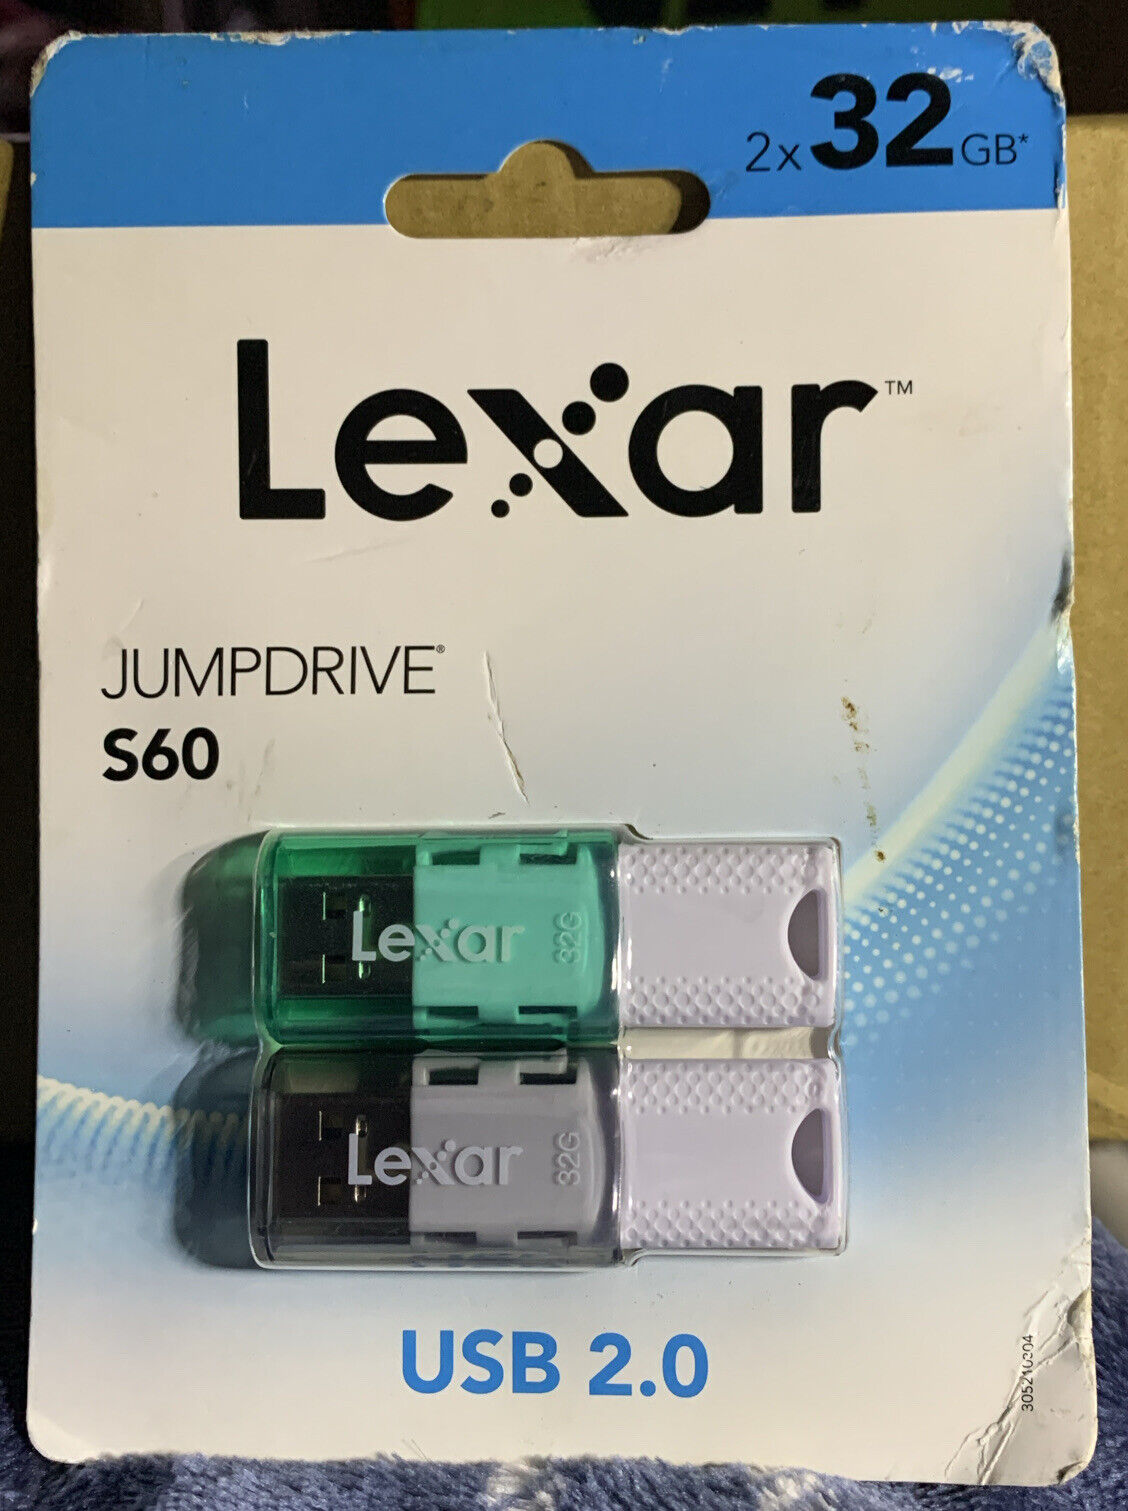 Lexar JumpDrive S60 USB 2.0 Flash Drives, 32GB, Pink/Green 2PK